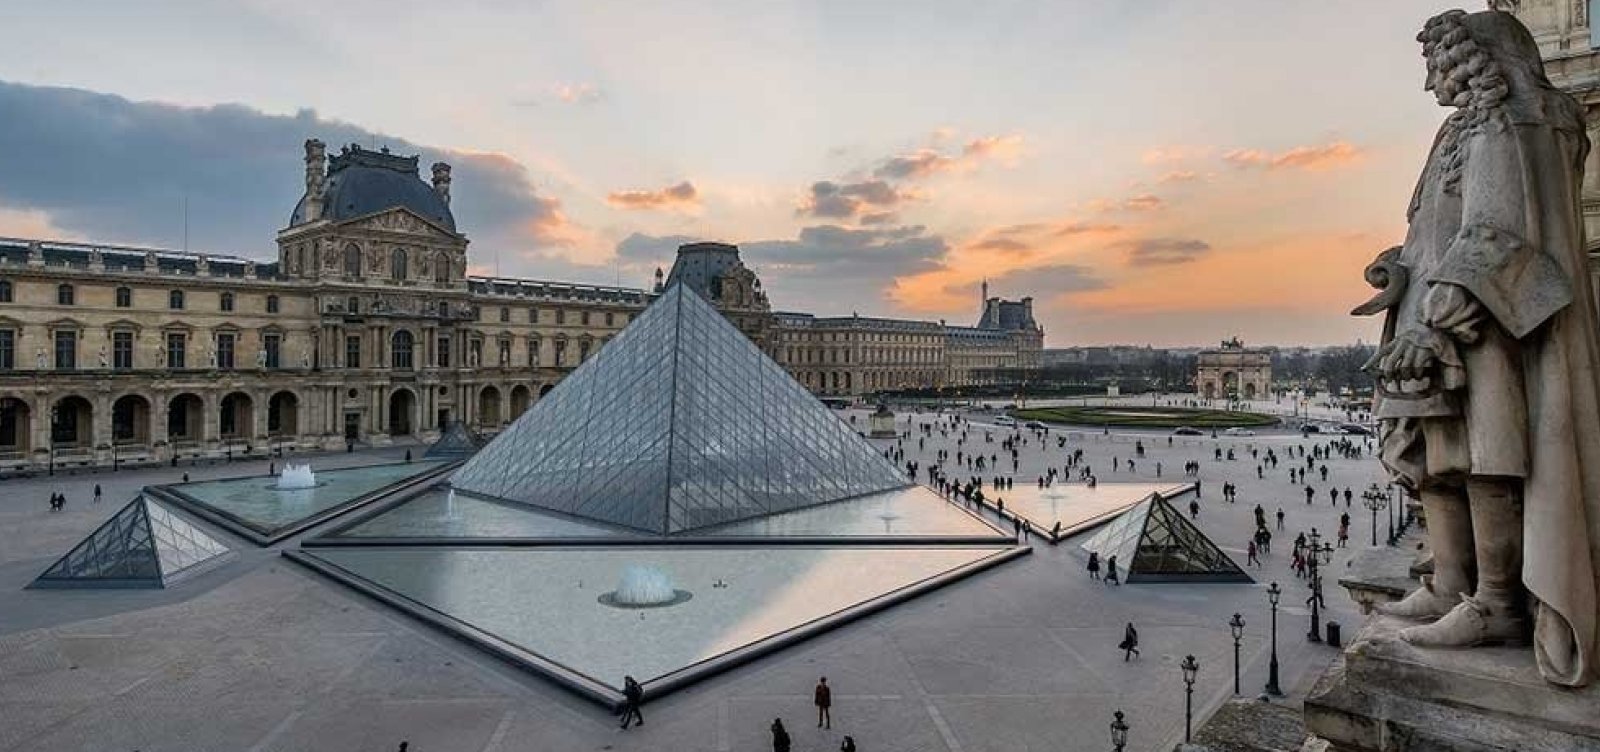 Museu do Louvre é fechado neste sábado após ameaça de bomba por escrito